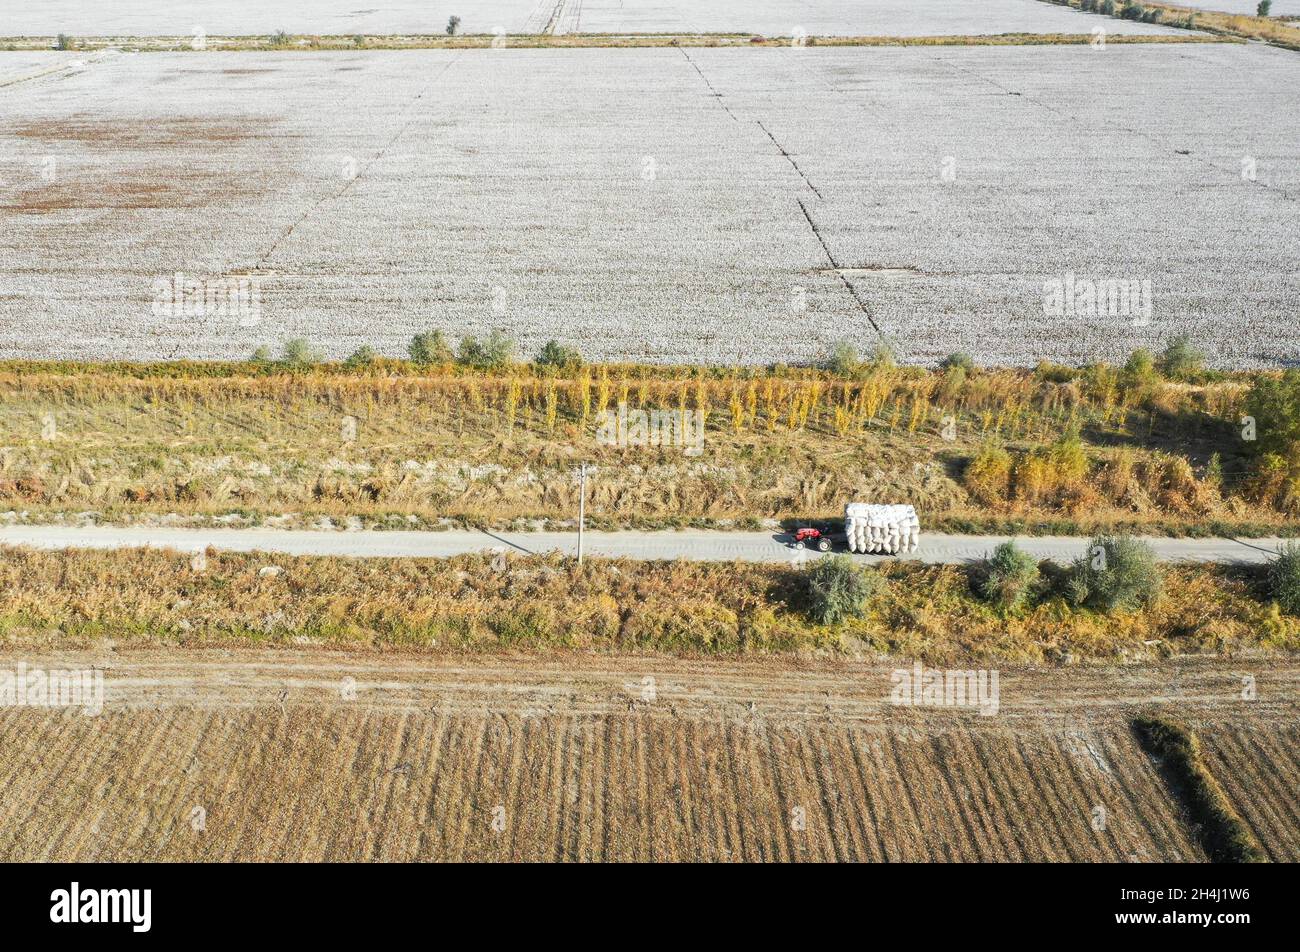 Yuli, la regione autonoma cinese di Xinjiang Uygur. 22 ottobre 2021. La foto aerea mostra Erkin Rehim che guida un trattore per trasportare il suo cotone nella contea di Yuli, regione autonoma di Xinjiang Uygur della Cina nord-occidentale, 22 ottobre 2021. Erkin Rehimc ha iniziato a coltivare cotone nel 2004 e ha beneficiato della meccanizzazione agricola dal 2017. Il coltivatore di cotone, 49, utilizza raccoglitori di cotone per raccogliere le sue 550 mu (circa 90.6 acri) di campi di cotone in 24 ore. Credit: Zhao GE/Xinhua/Alamy Live News Foto Stock